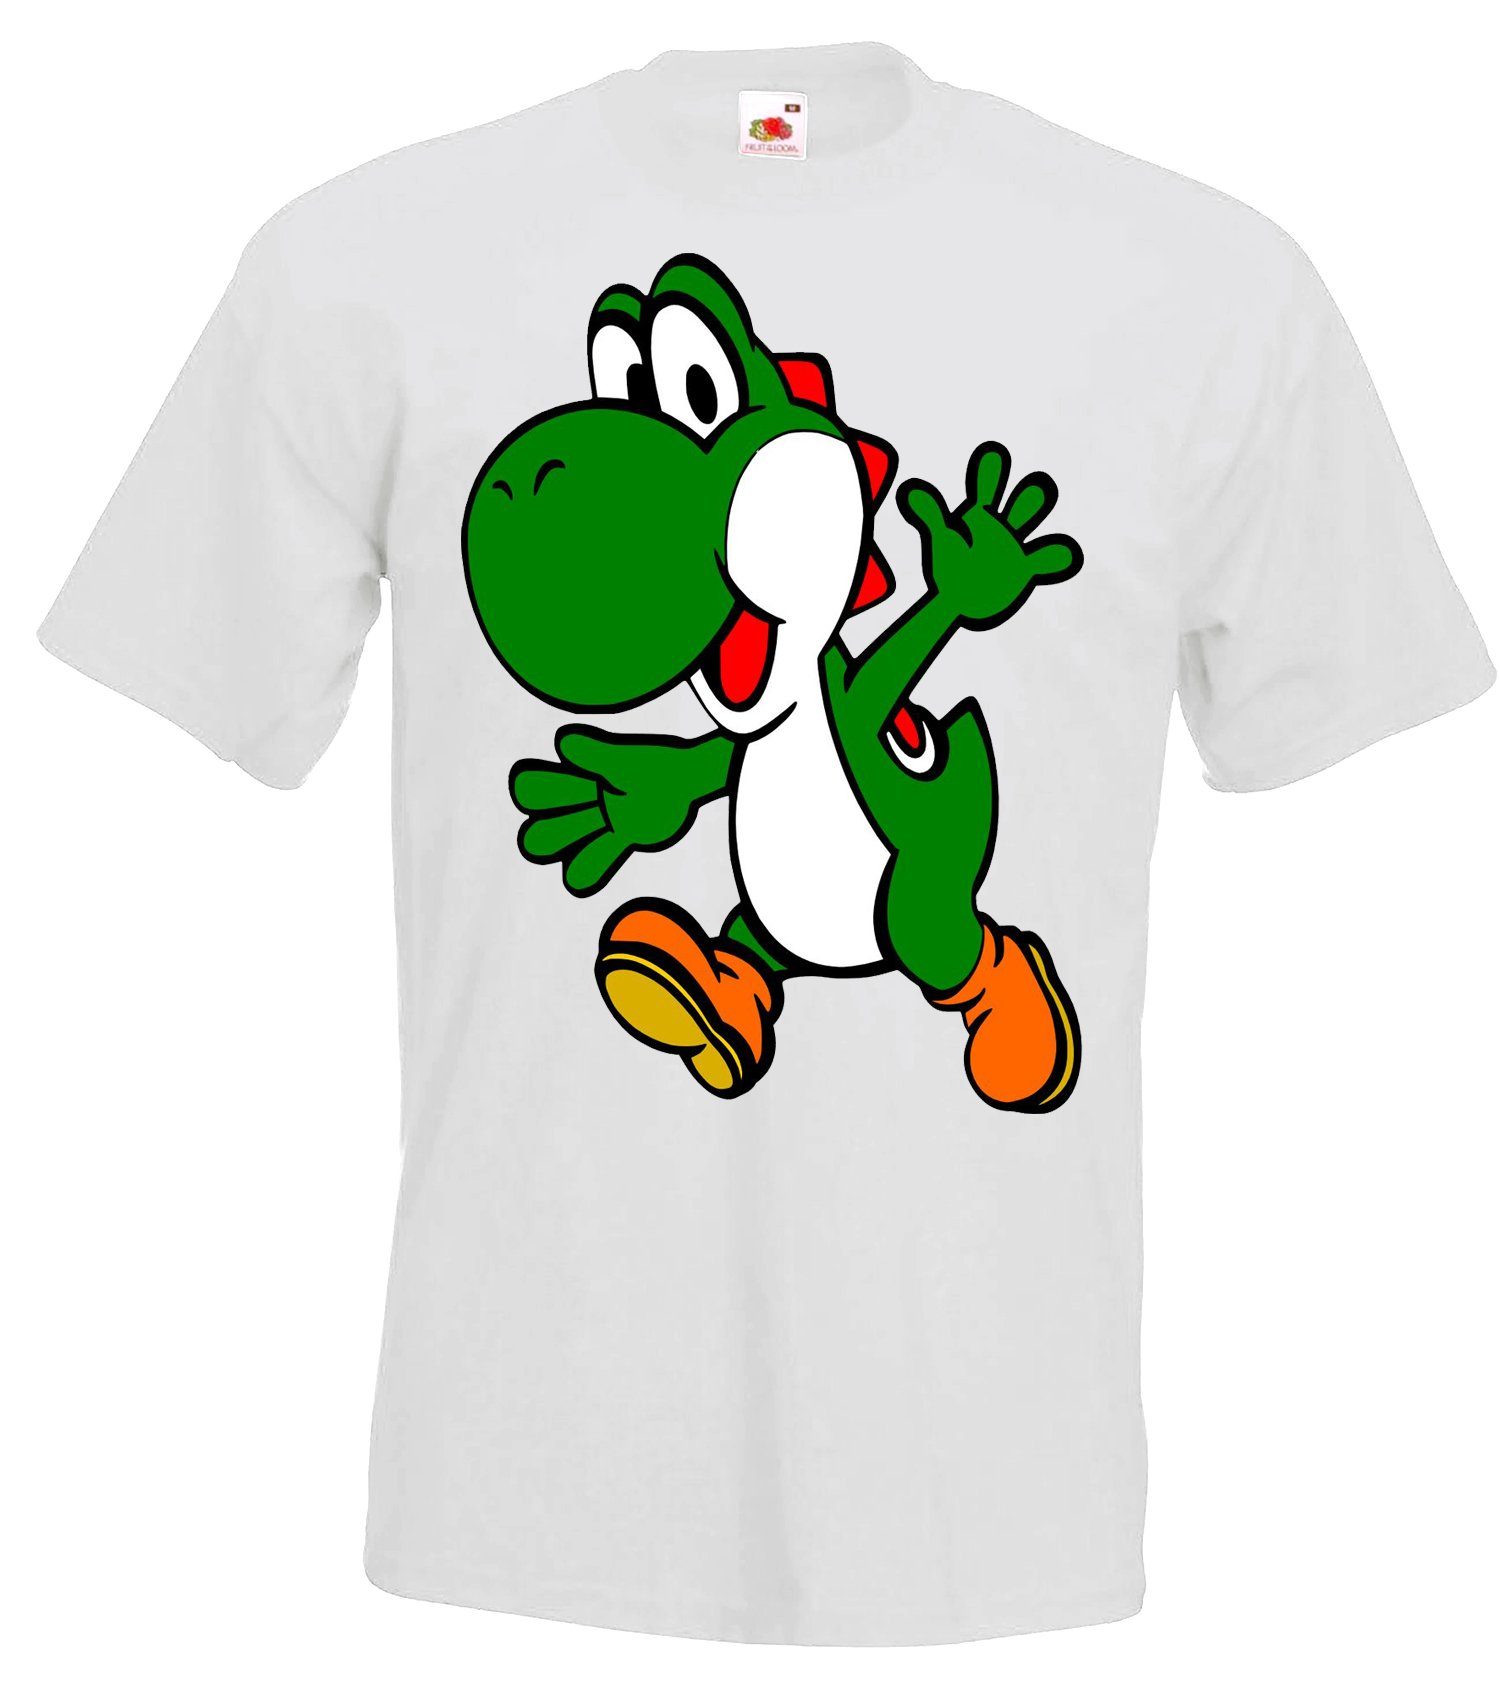 Youth Designz T-Shirt Yoshi witziges Frontprint T-Shirt Mit für Weiß trendigem Herren Gaming